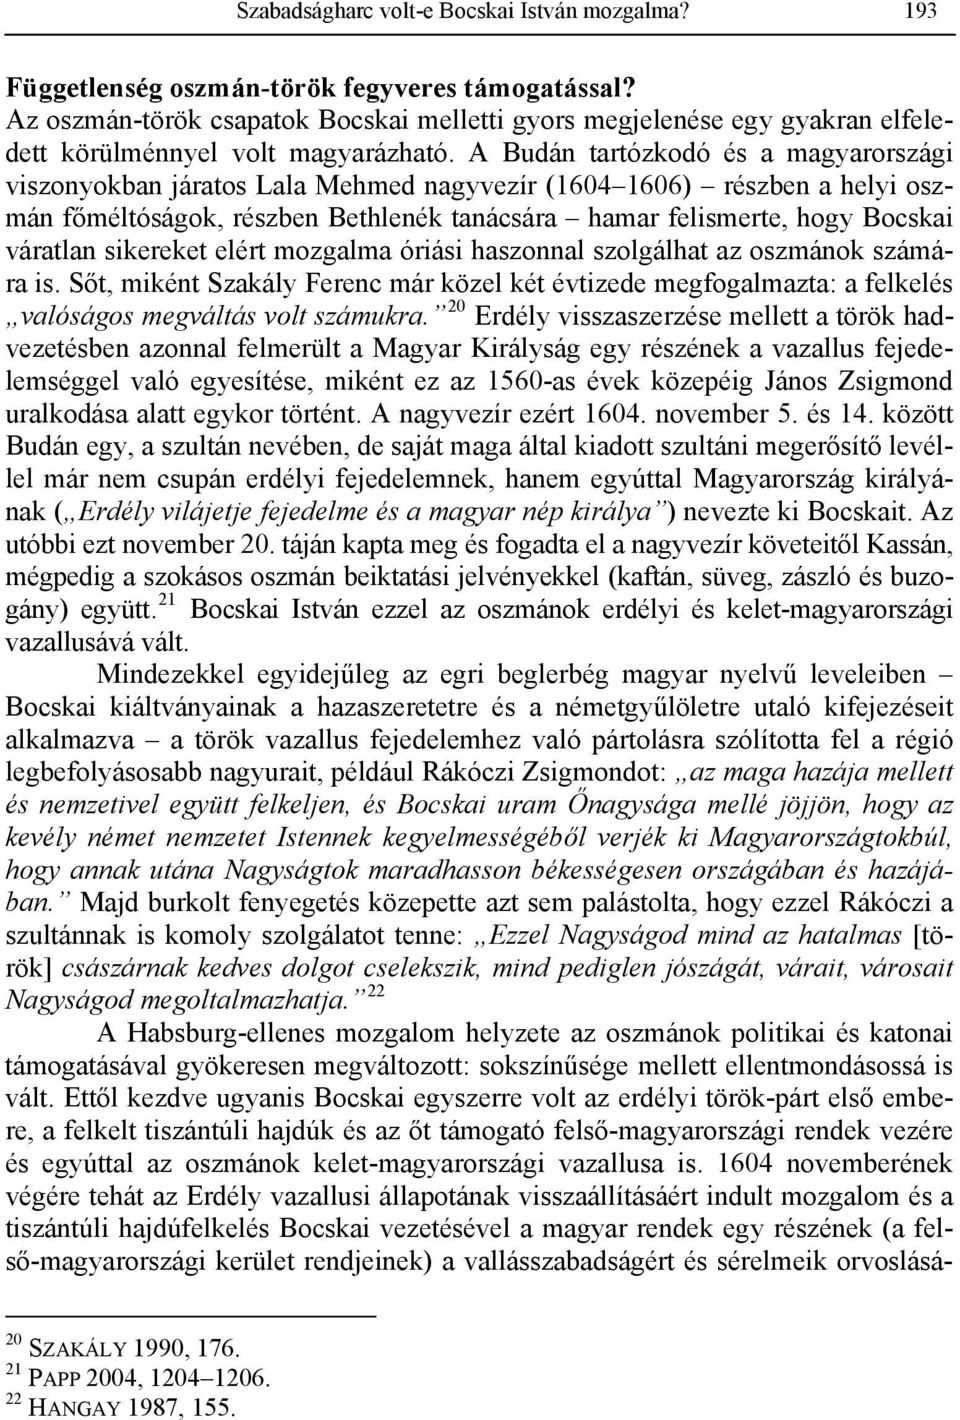 A Budán tartózkodó és a magyarországi viszonyokban járatos Lala Mehmed nagyvezír (1604 1606) részben a helyi oszmán főméltóságok, részben Bethlenék tanácsára hamar felismerte, hogy Bocskai váratlan